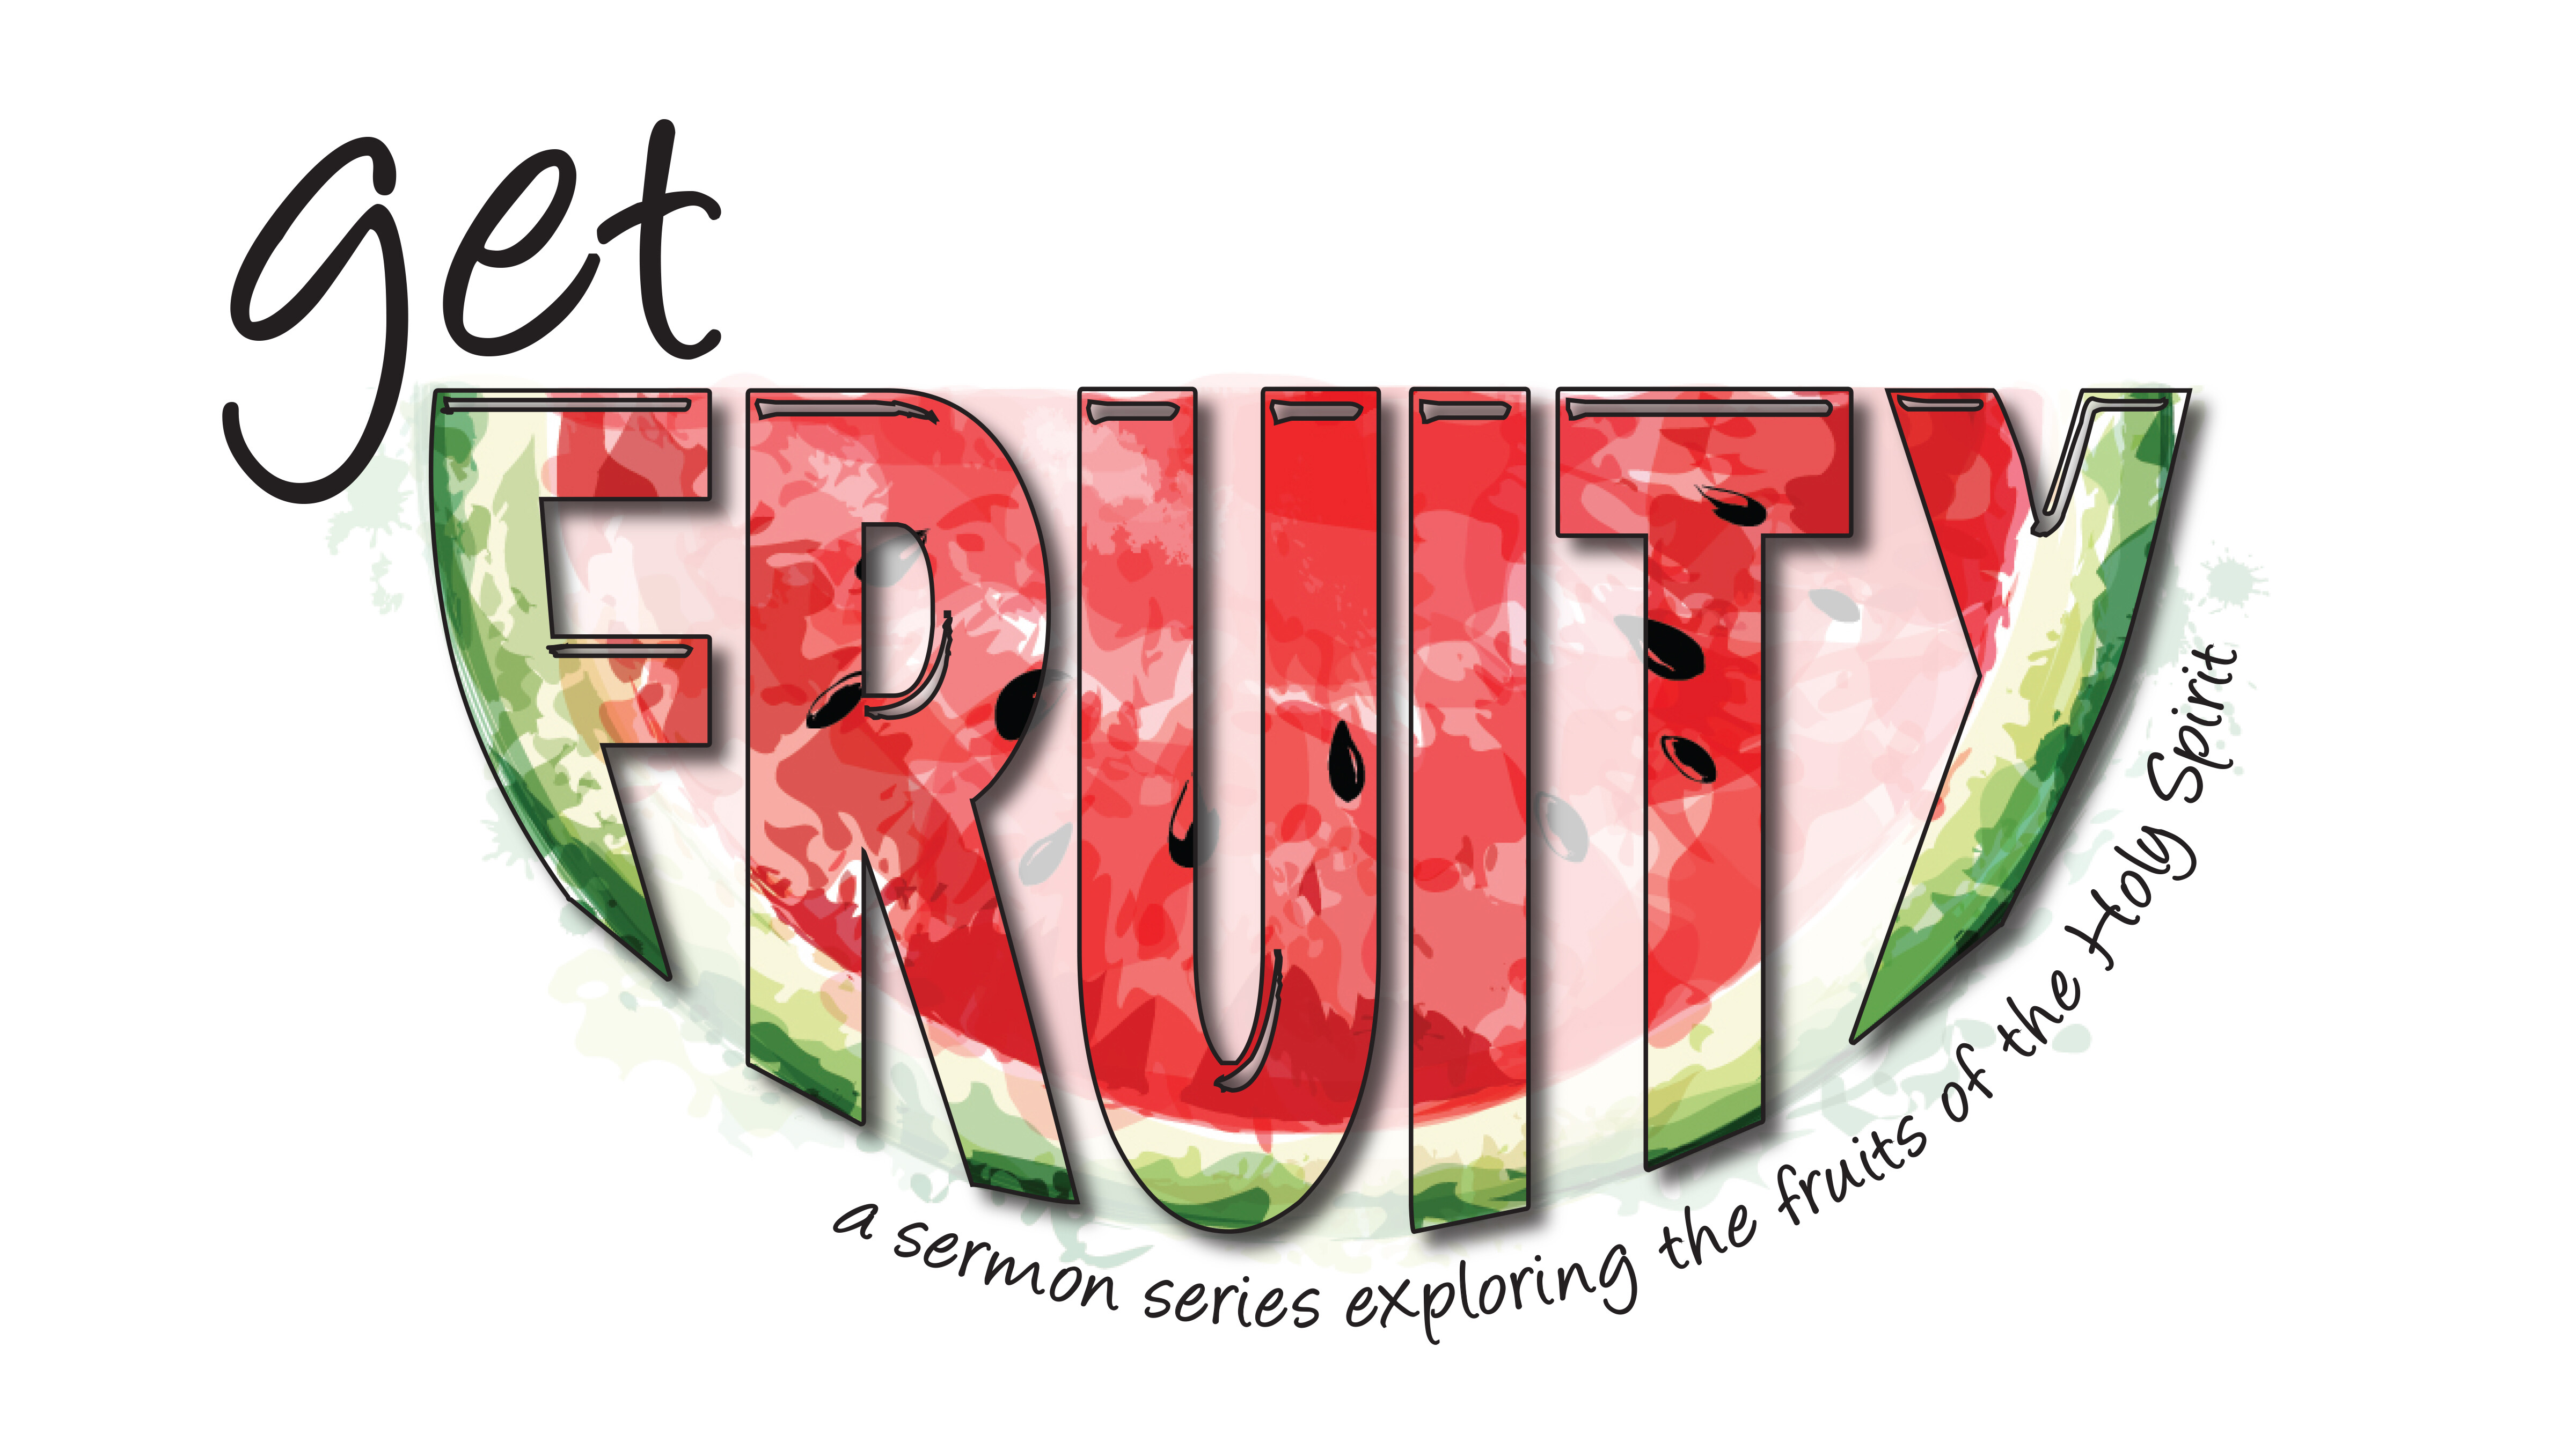 Get Fruity